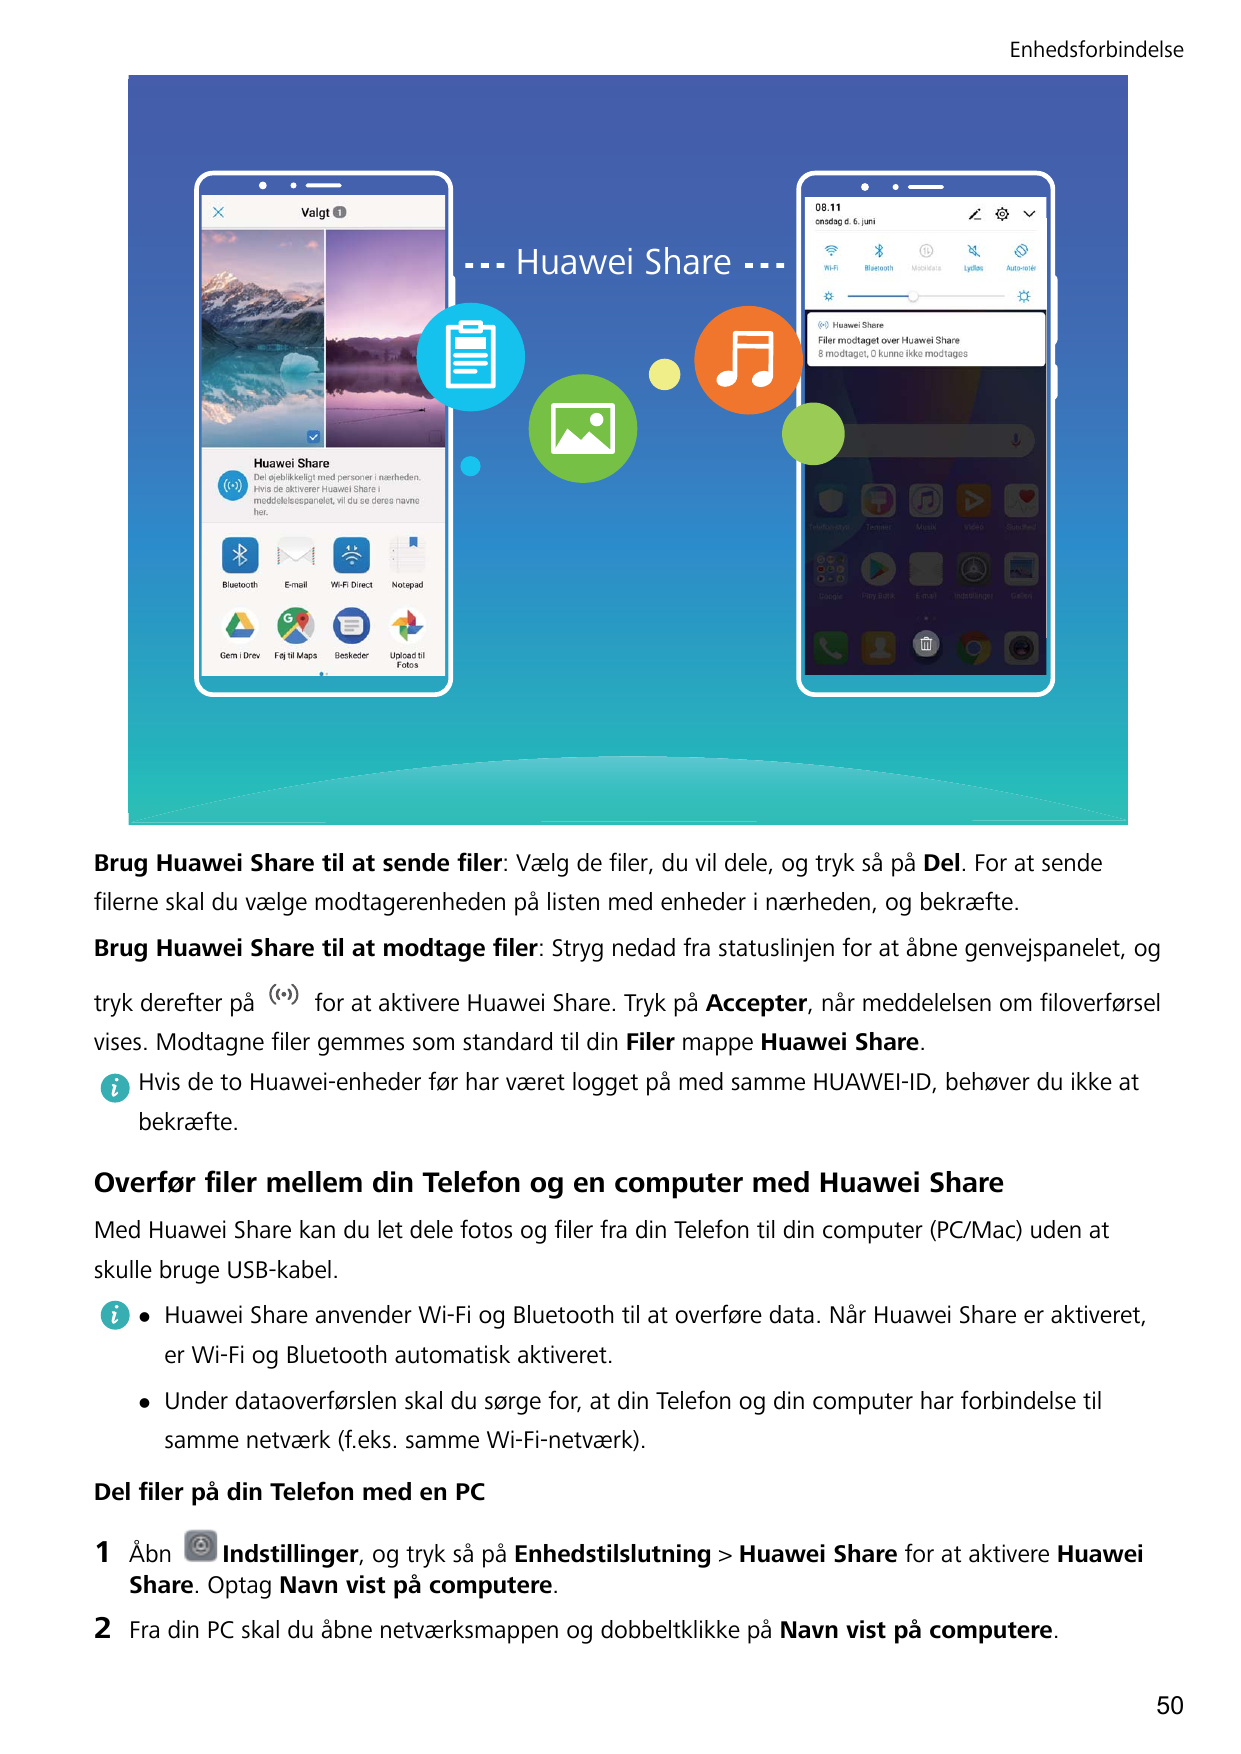 EnhedsforbindelseHuawei ShareBrug Huawei Share til at sende filer: Vælg de filer, du vil dele, og tryk så på Del. For at sendefi